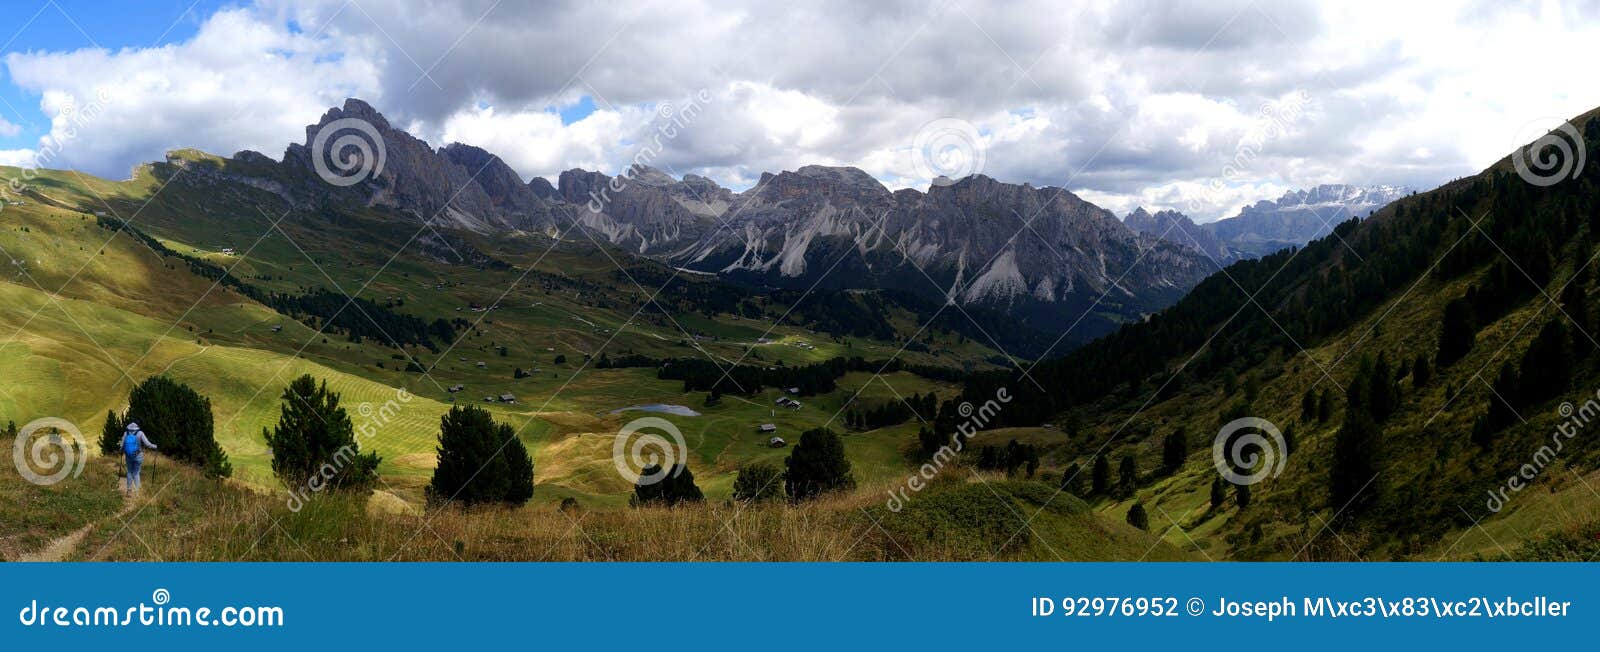 美丽的田园诗阿尔卑斯和山在白云岩. 在南蒂罗尔/白云岩的Gardena谷/rosengarden/sella/sassolungo